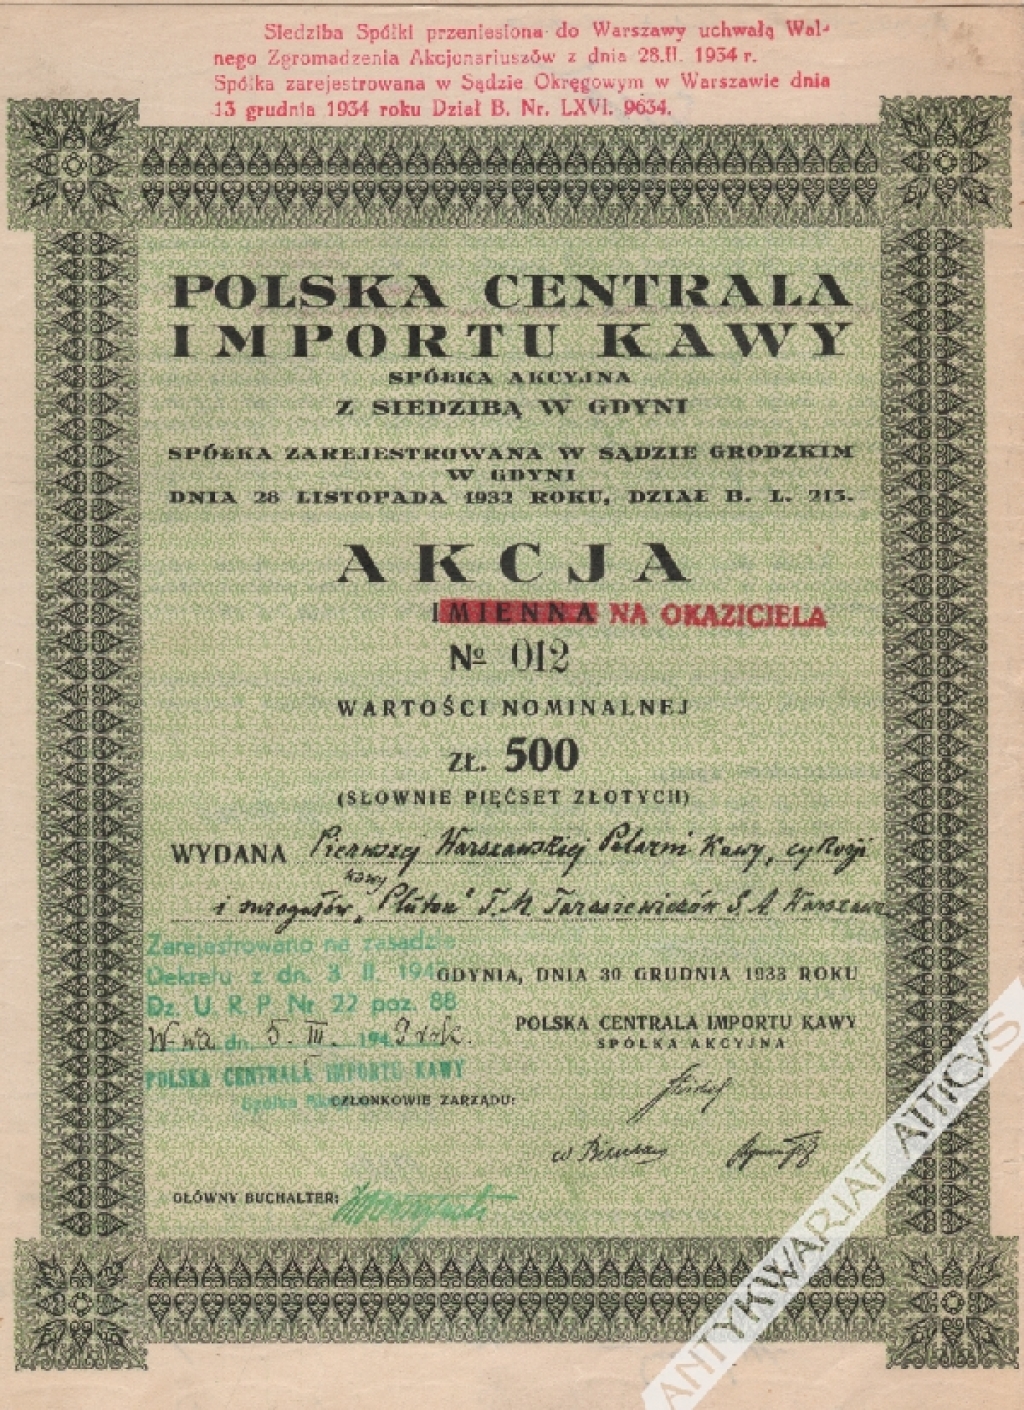 [akcja, 1933] Polska Centrala Importu Kawy. Akcja o wartości nominalnej zł. 500